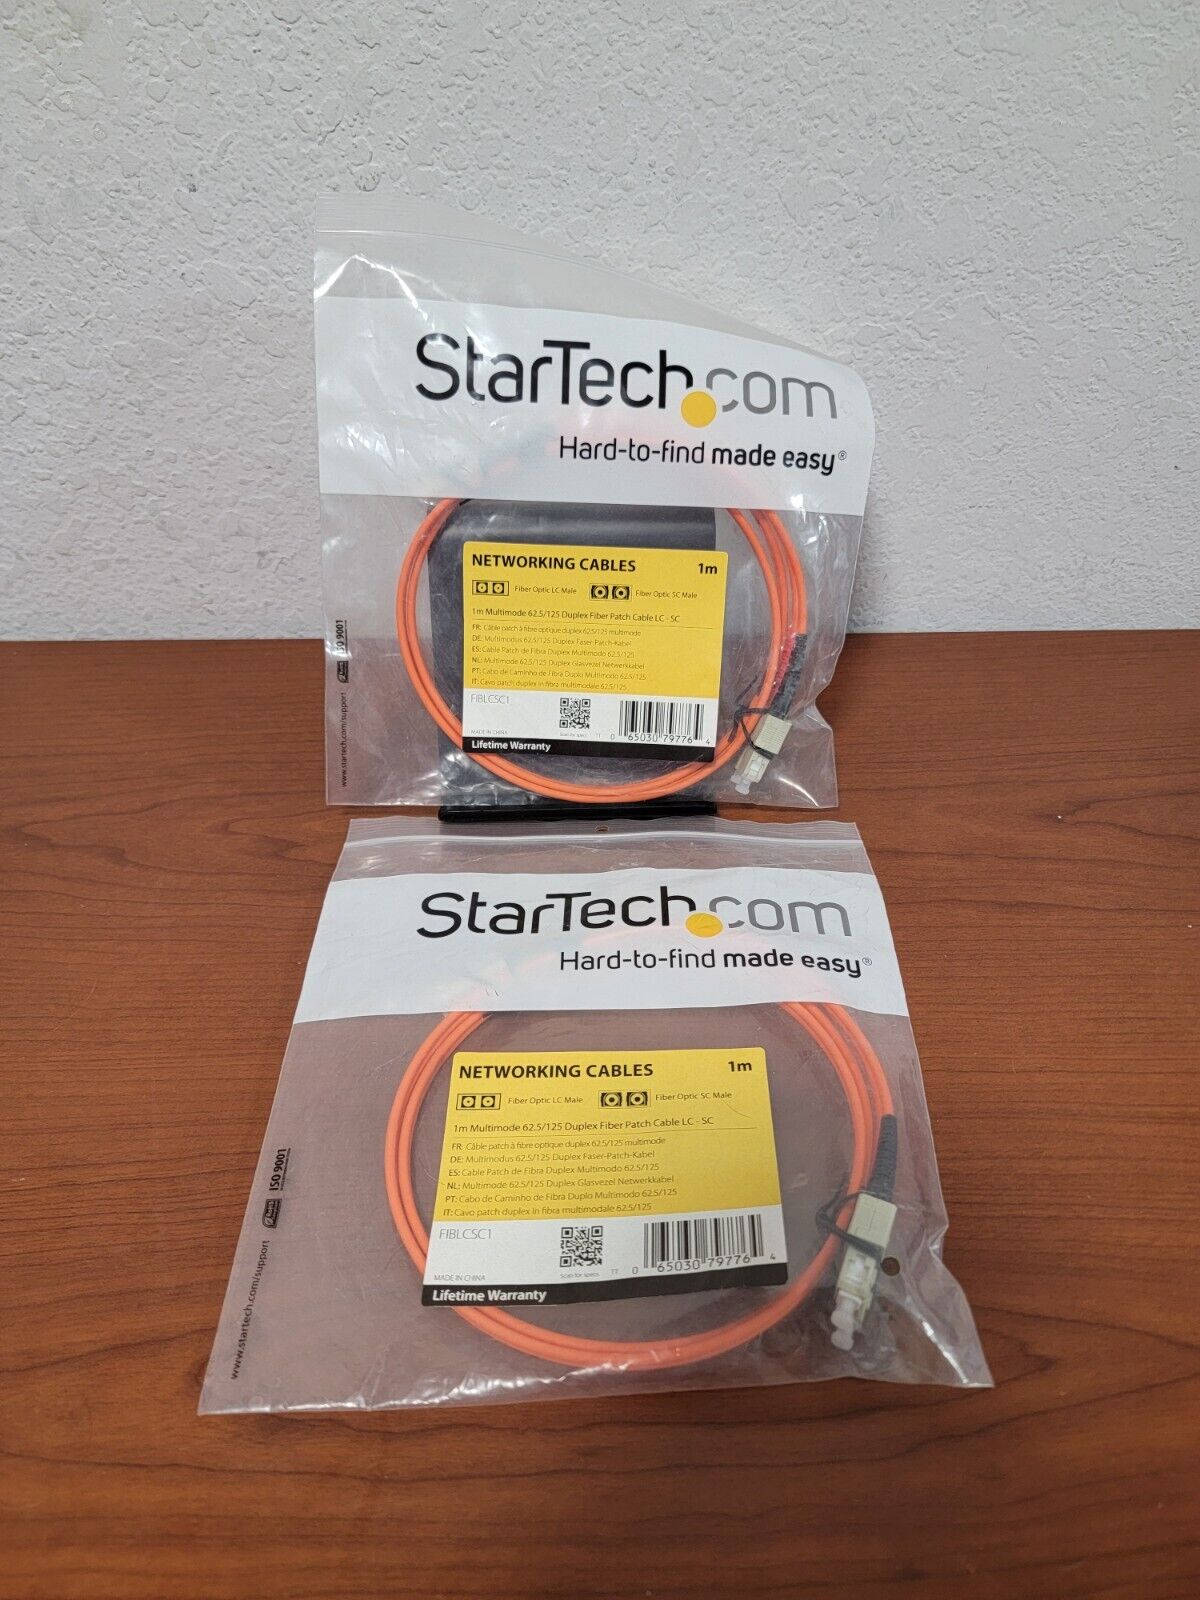 2x Lot STARTECH FIBLCSC1 1m Fiber Optical Networking Cables - NEW